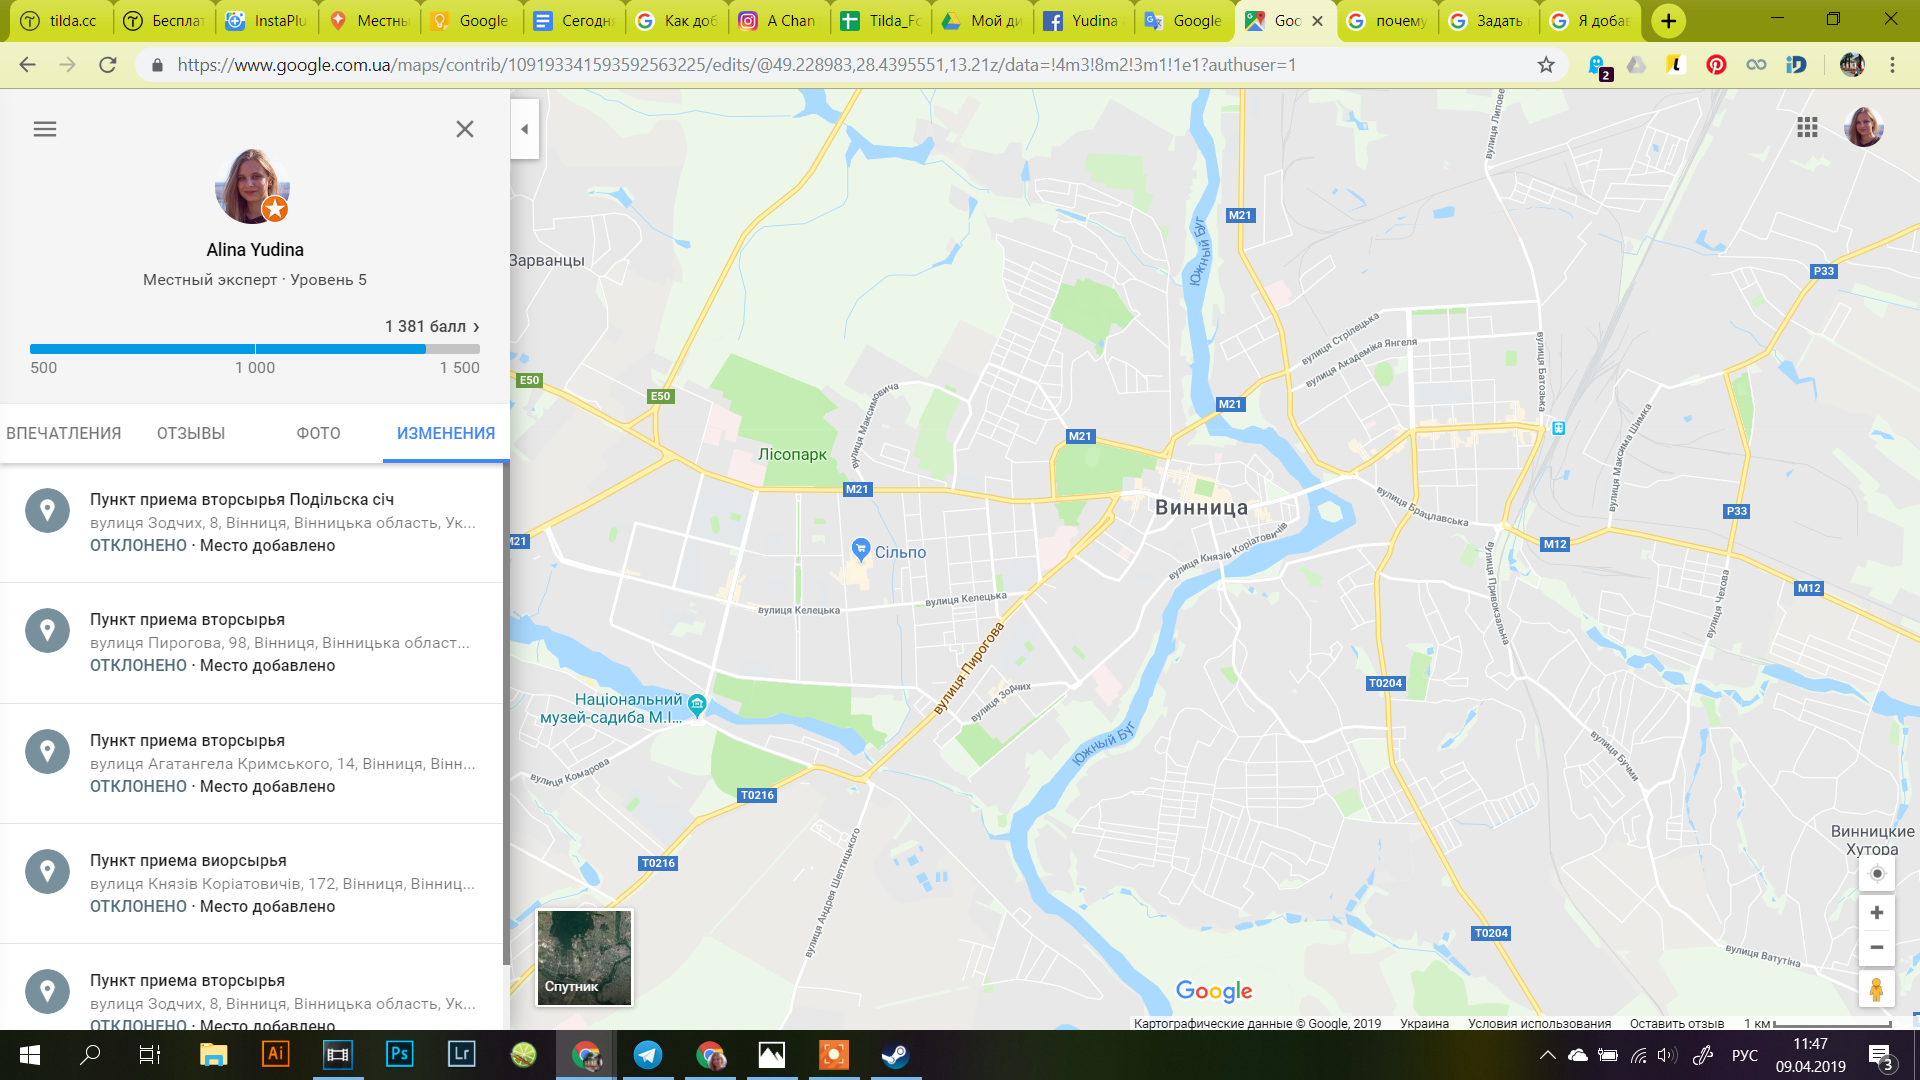 Гугл карты. Гугл карты Мои карты. Гугл карты Екатеринбург. Карта пунктов приема вторсырья.